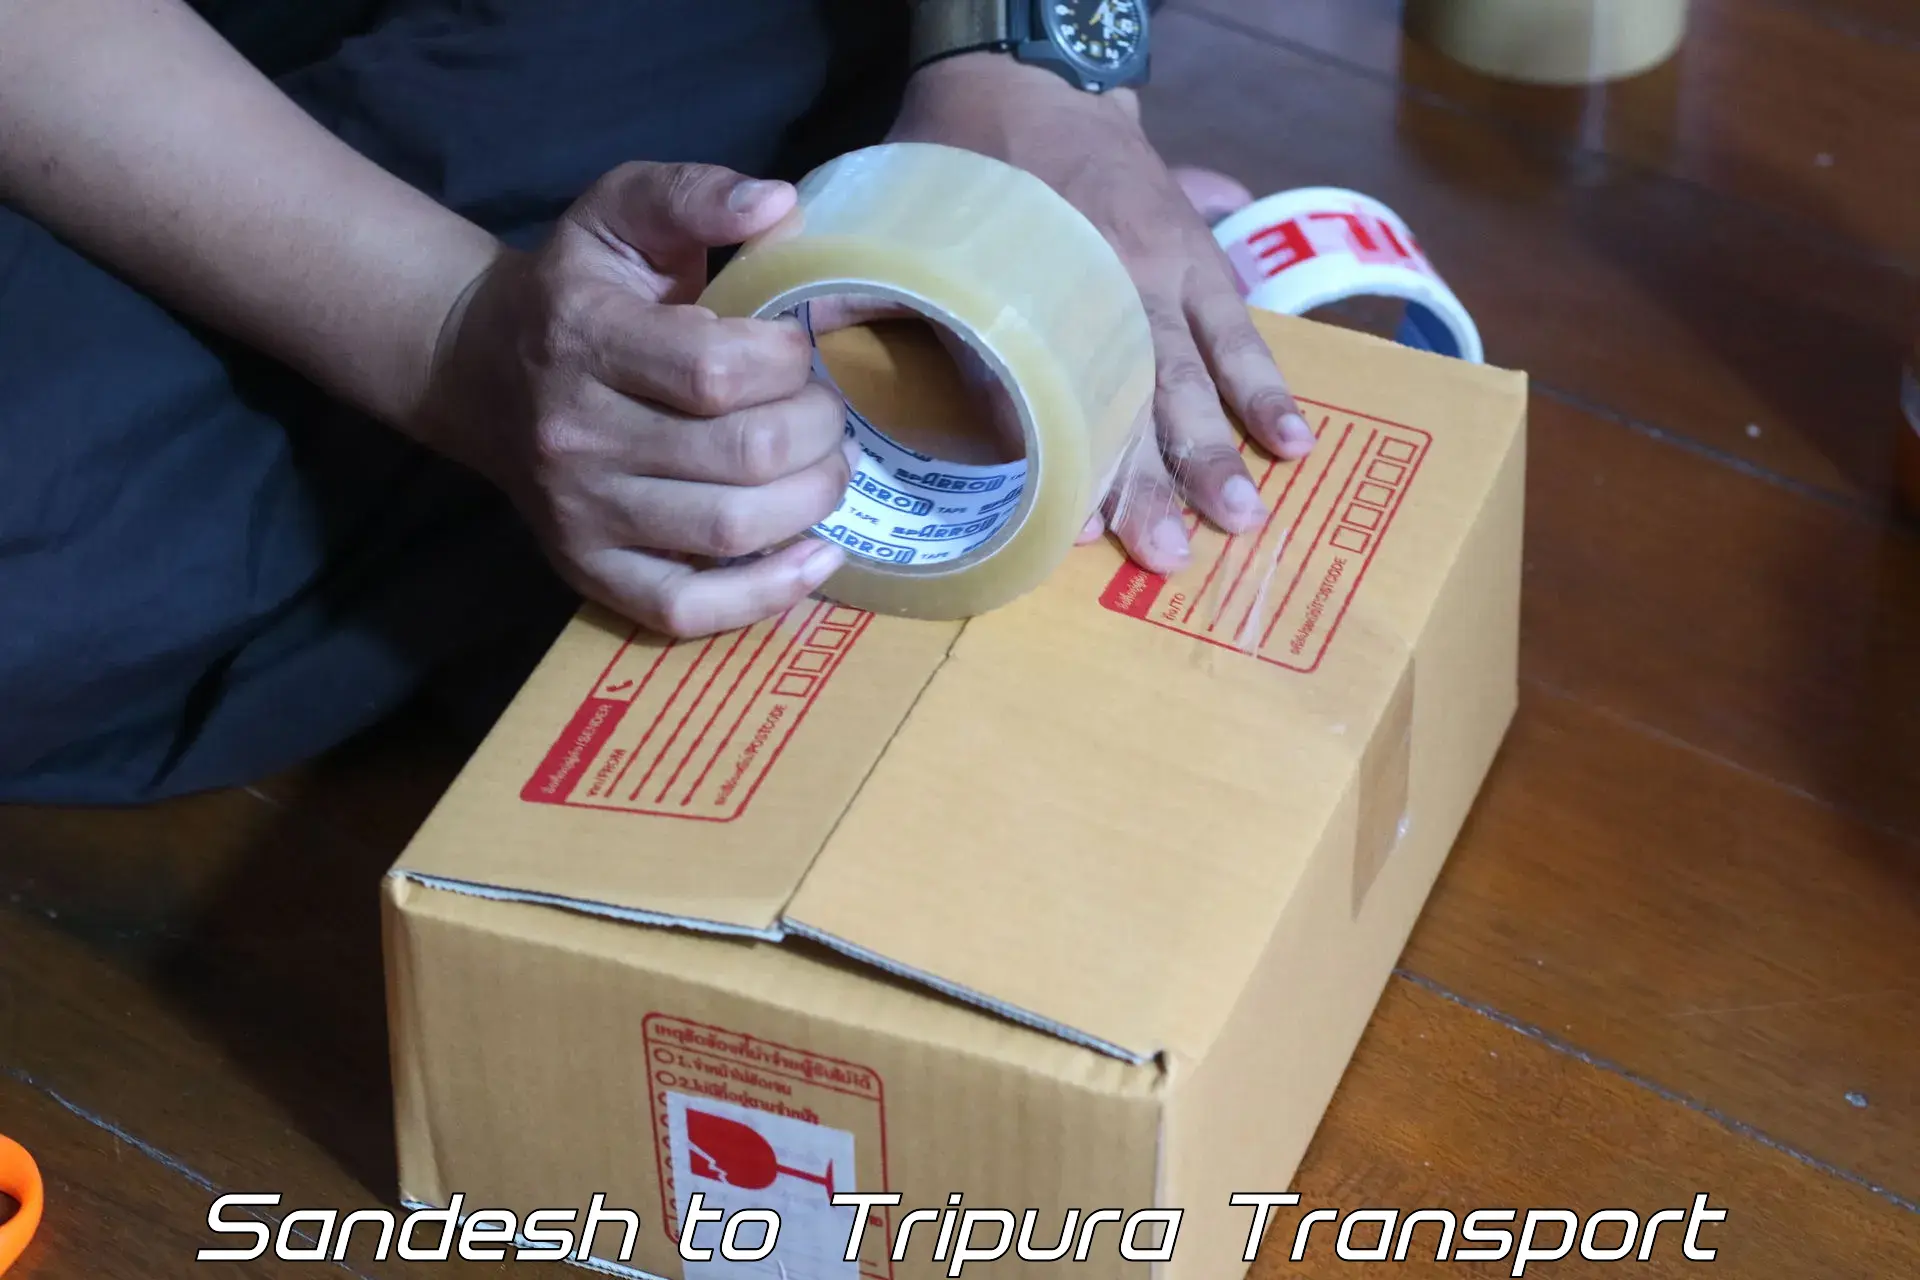 Parcel transport services Sandesh to Udaipur Tripura